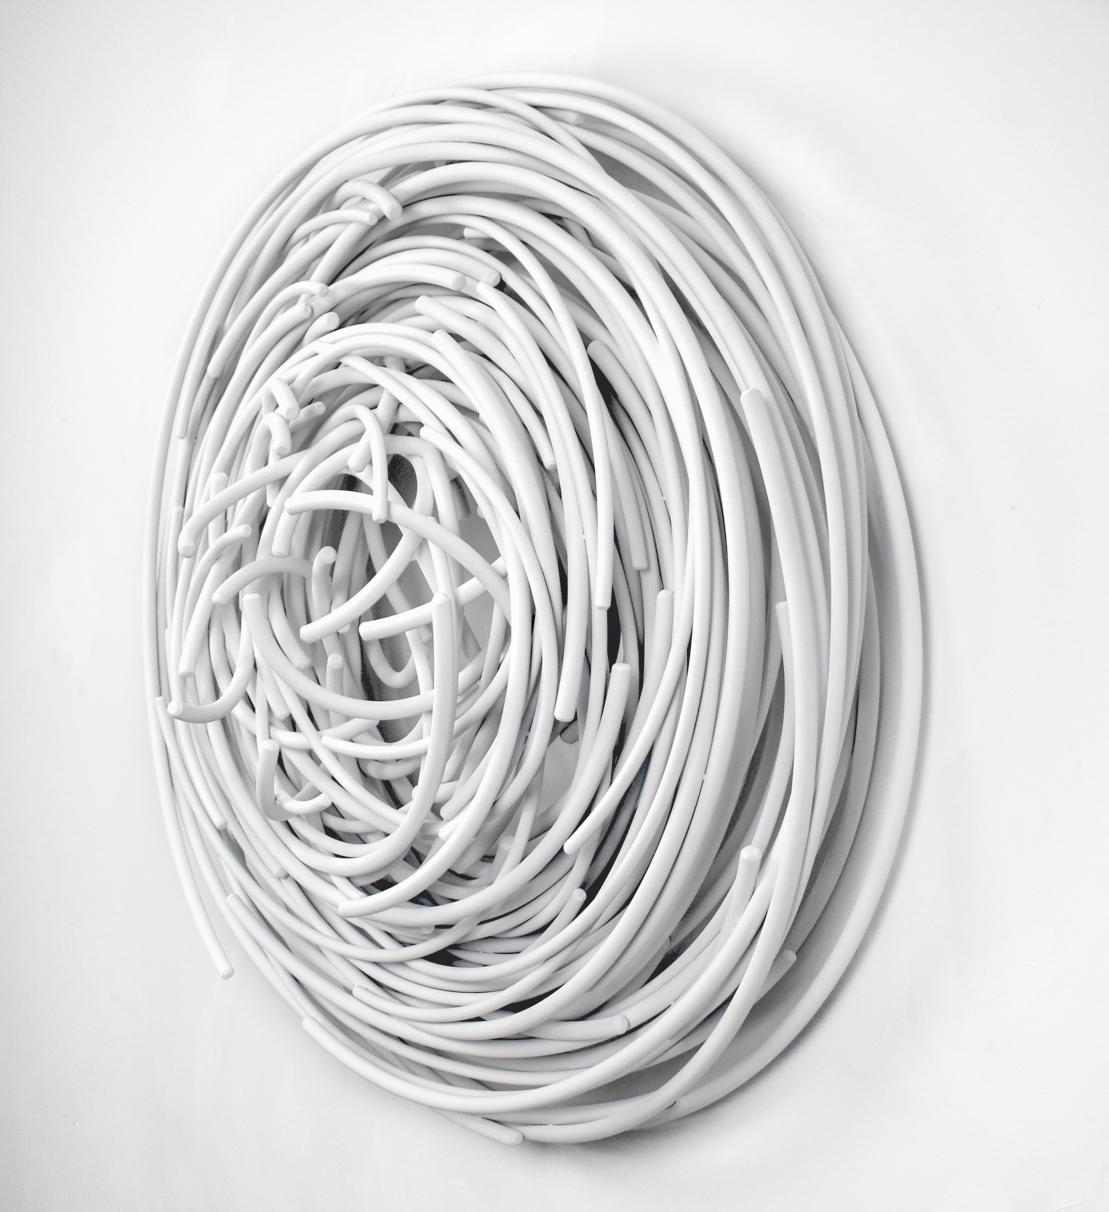 Maelstrom Serie Nr. 6 – Wandskulptur aus geschmiedetem, sich kreuzendem Aluminium mit Schichten – Sculpture von Shayne Dark